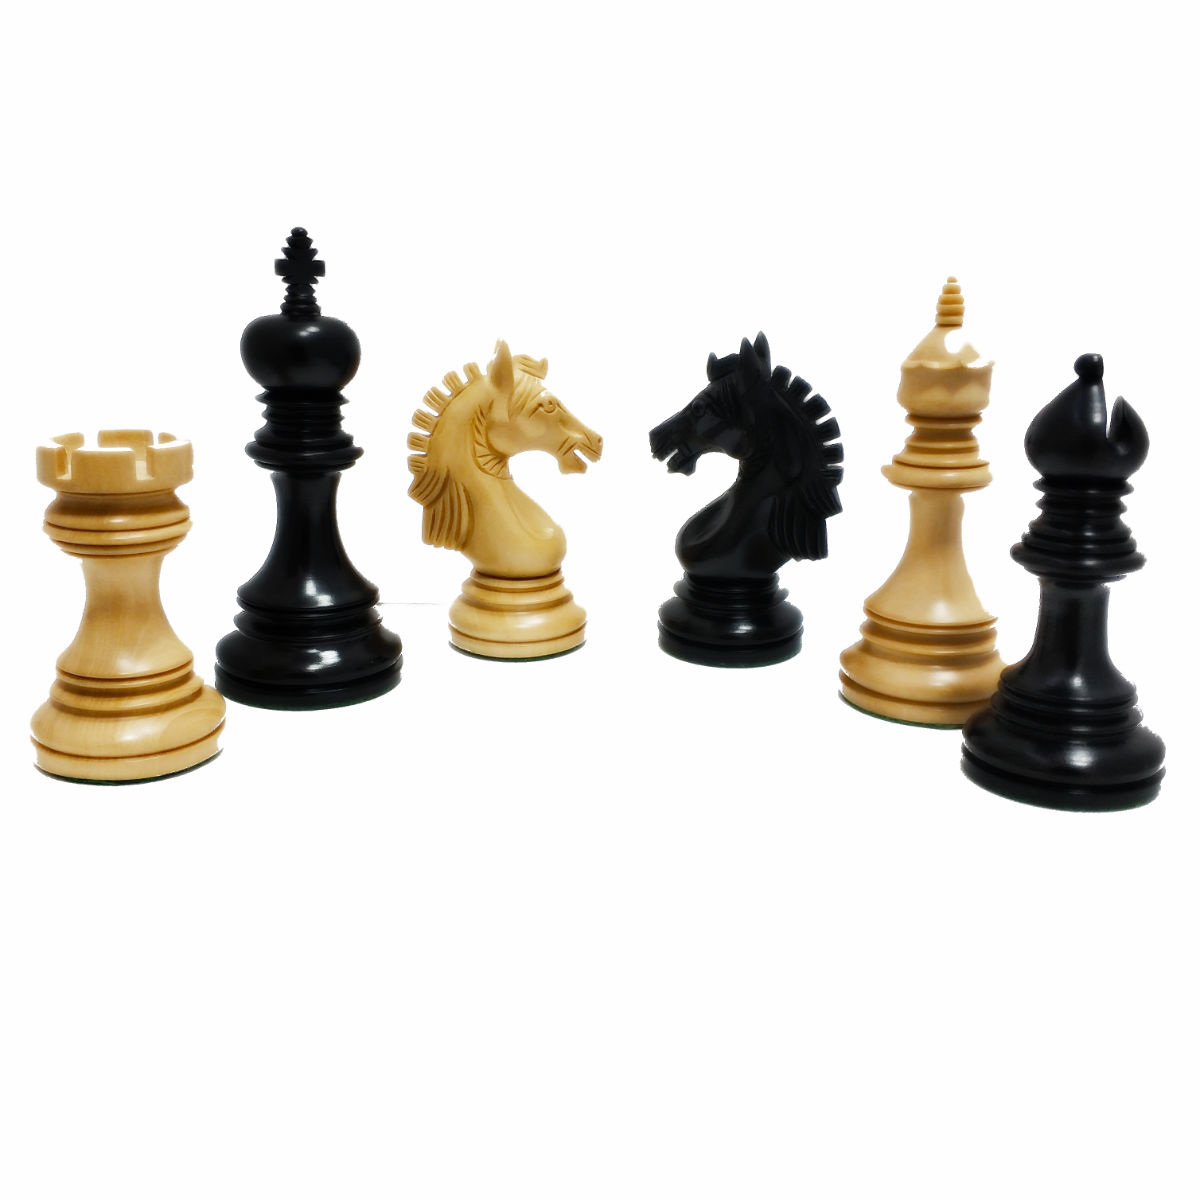 כלי שחמט גארבי שישאם Garvi Shisham